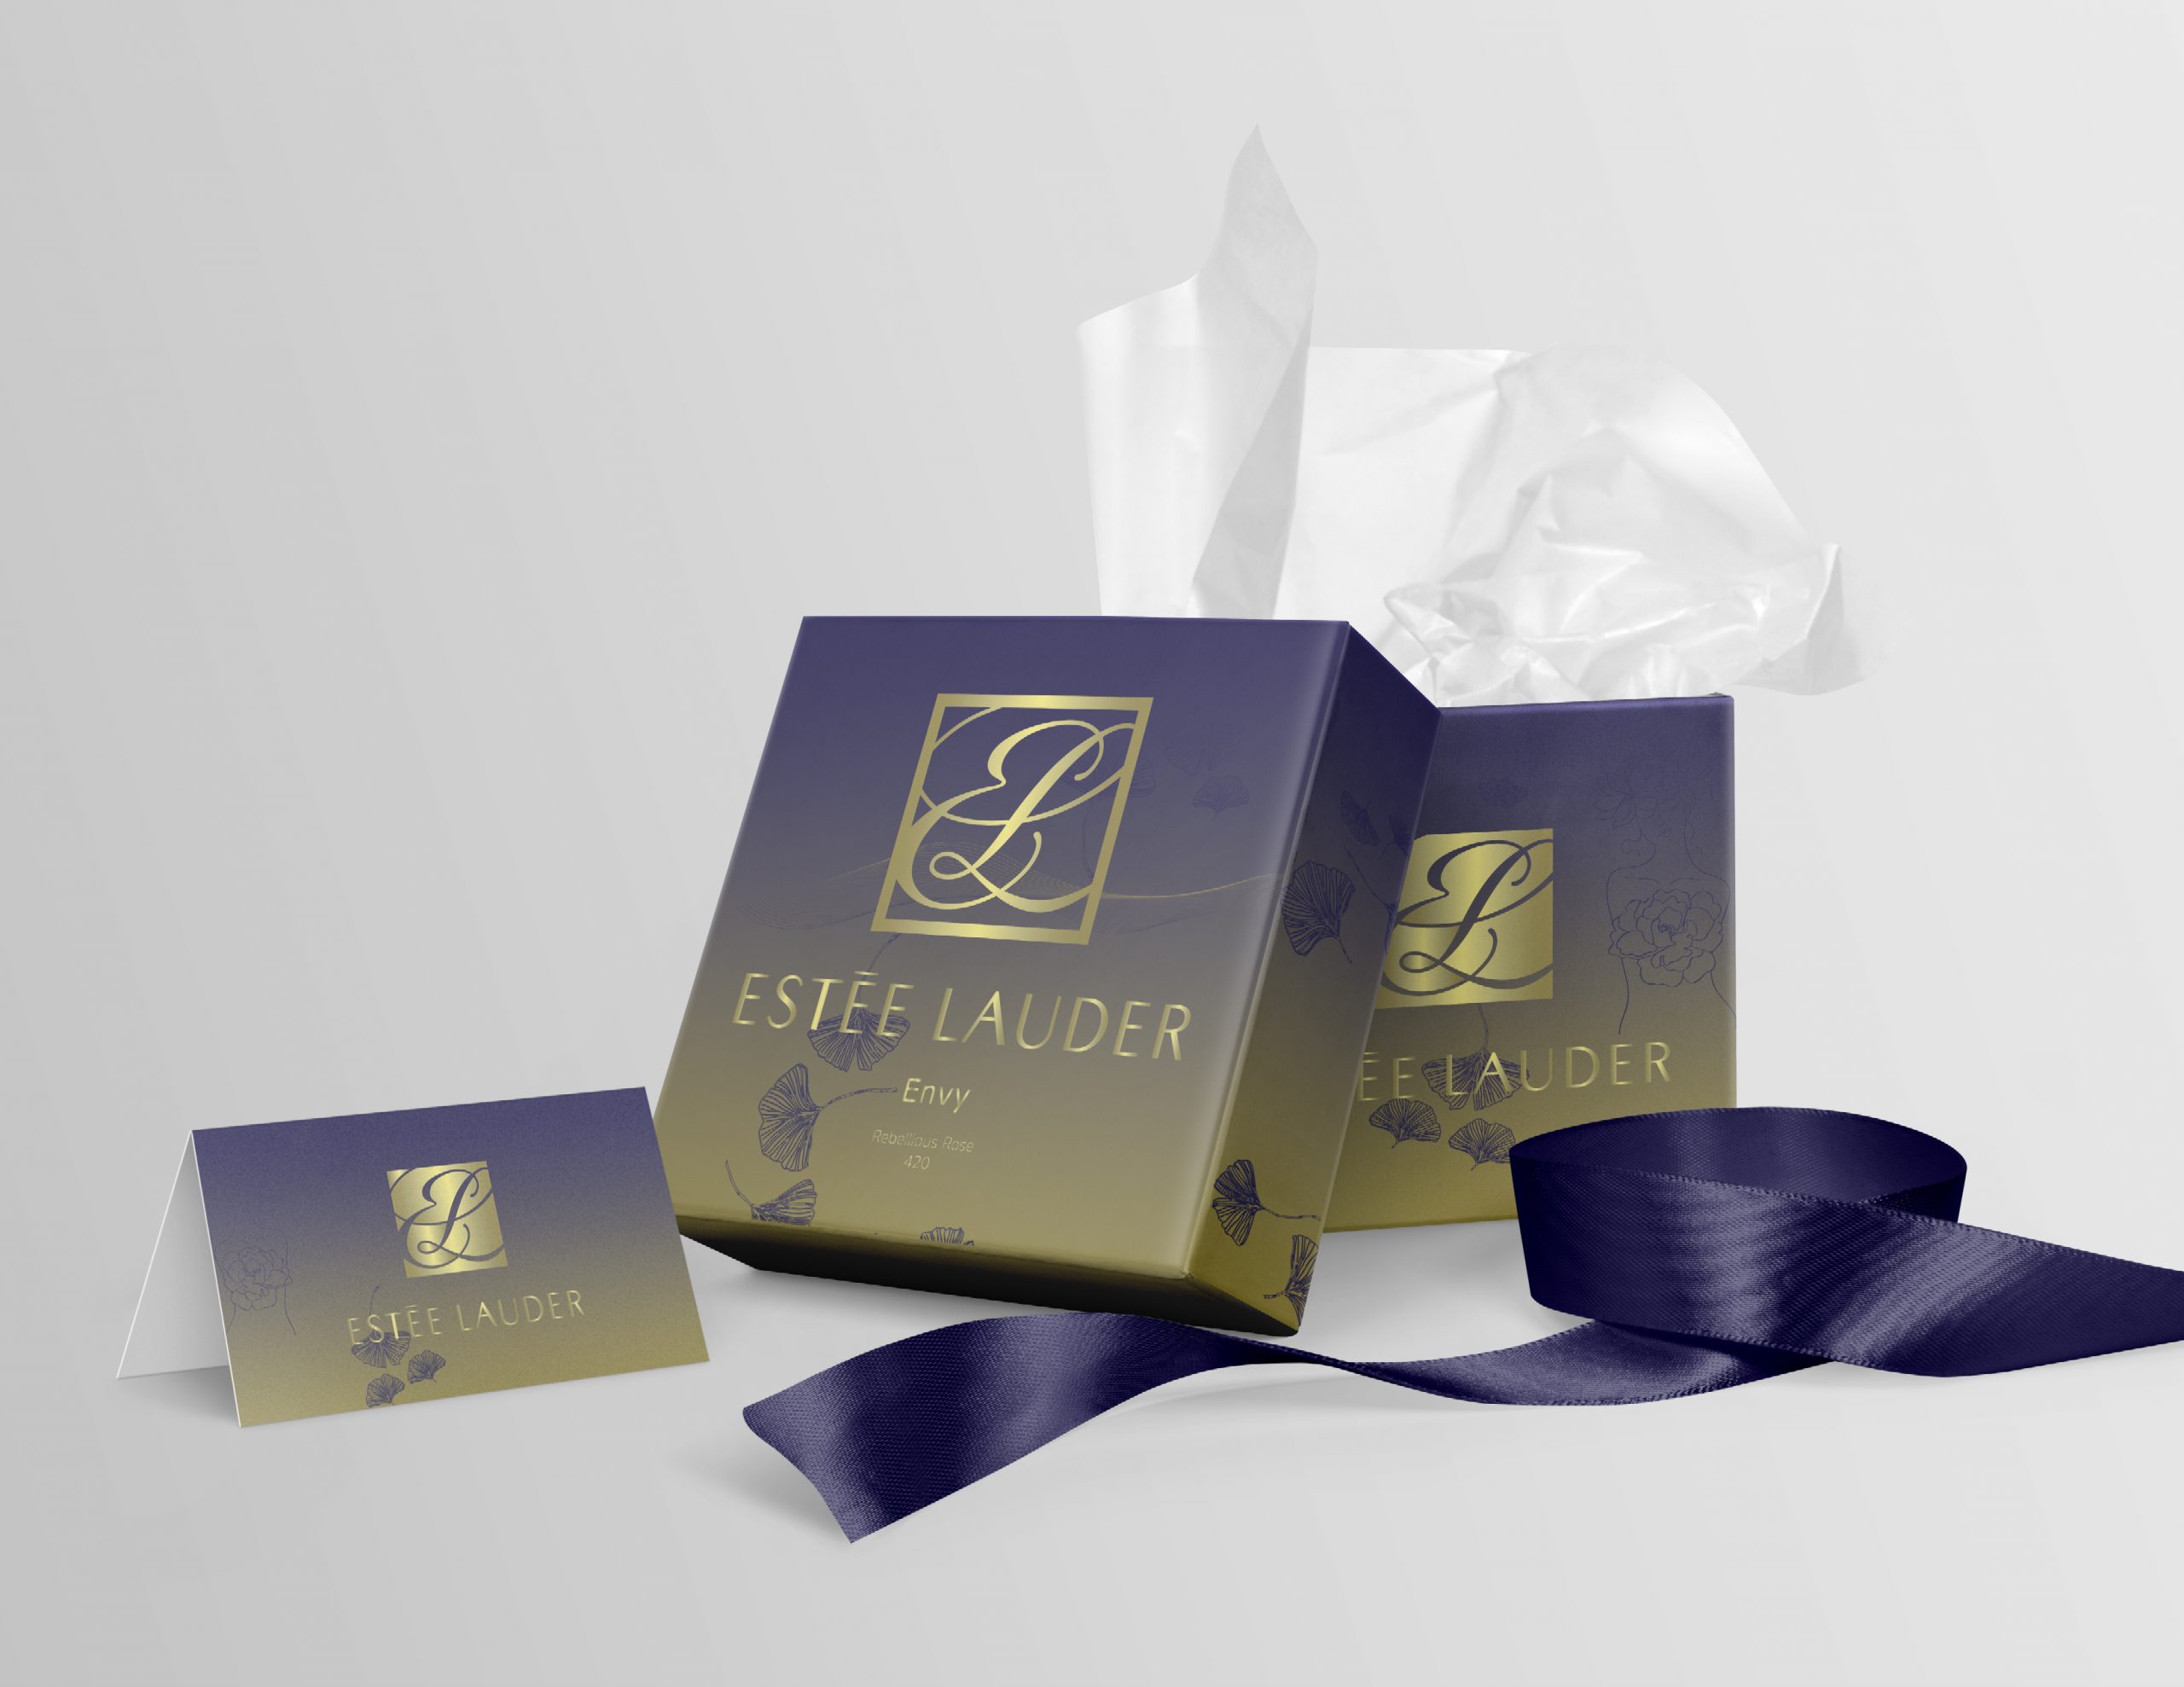 Estee Lauder Gift Box